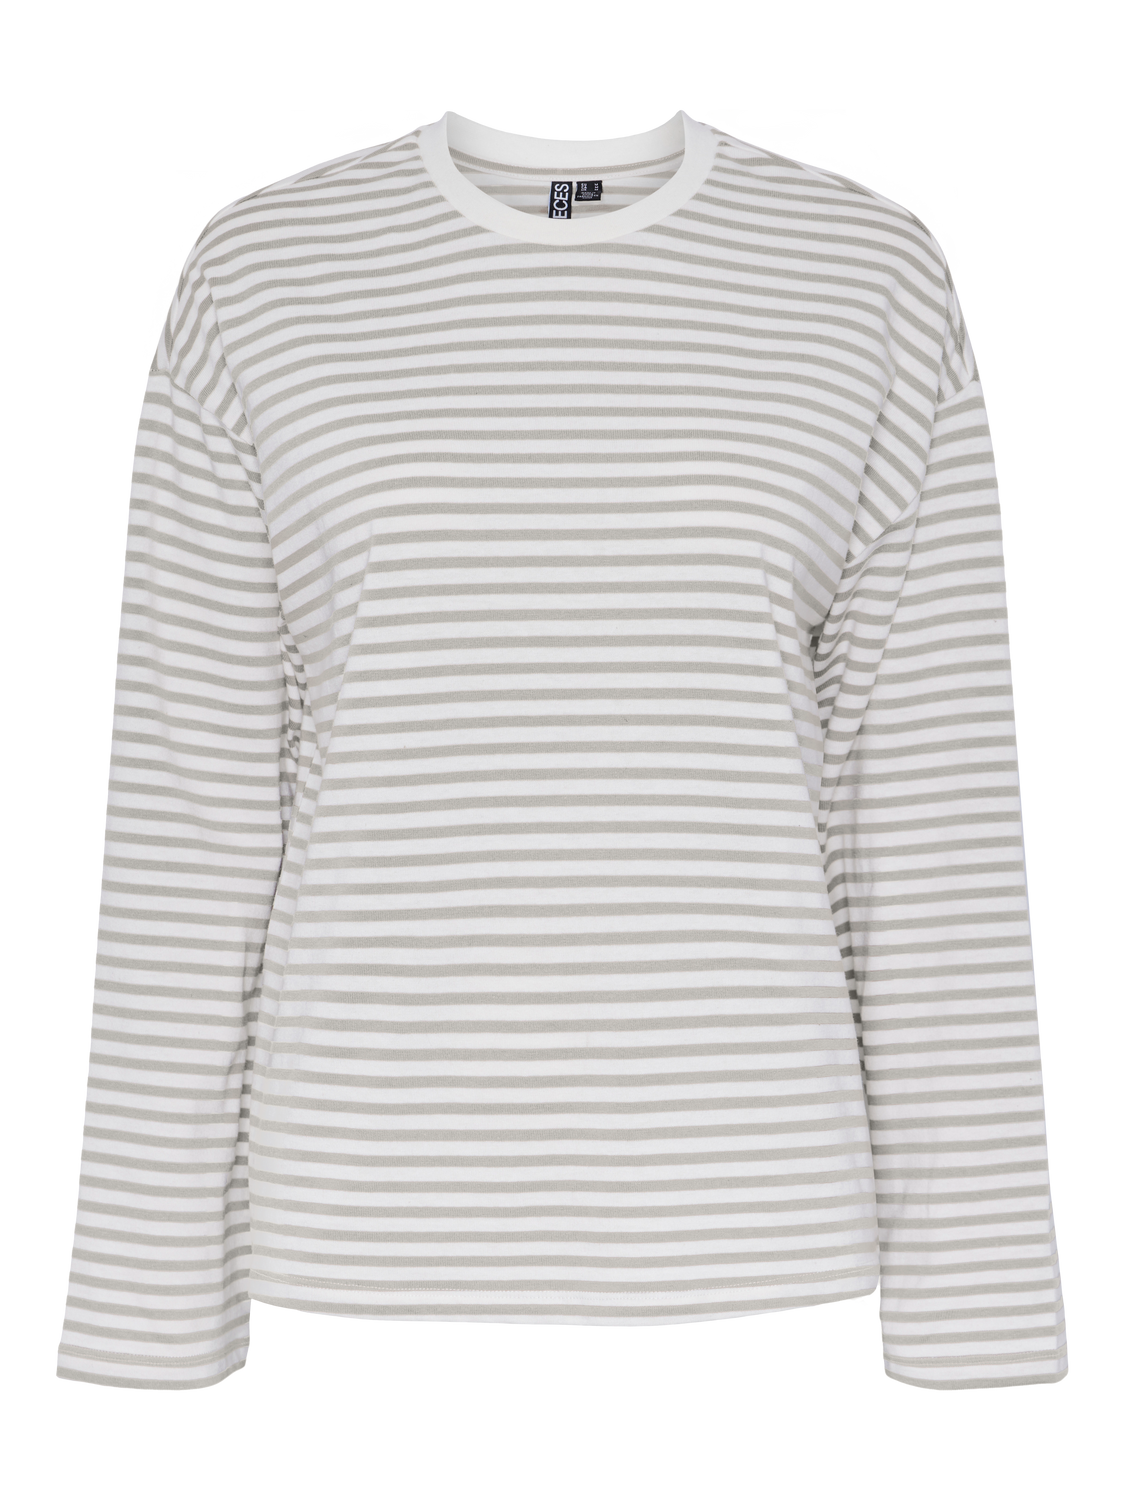 PCSADIE T-Shirt - hvid m. grå striber